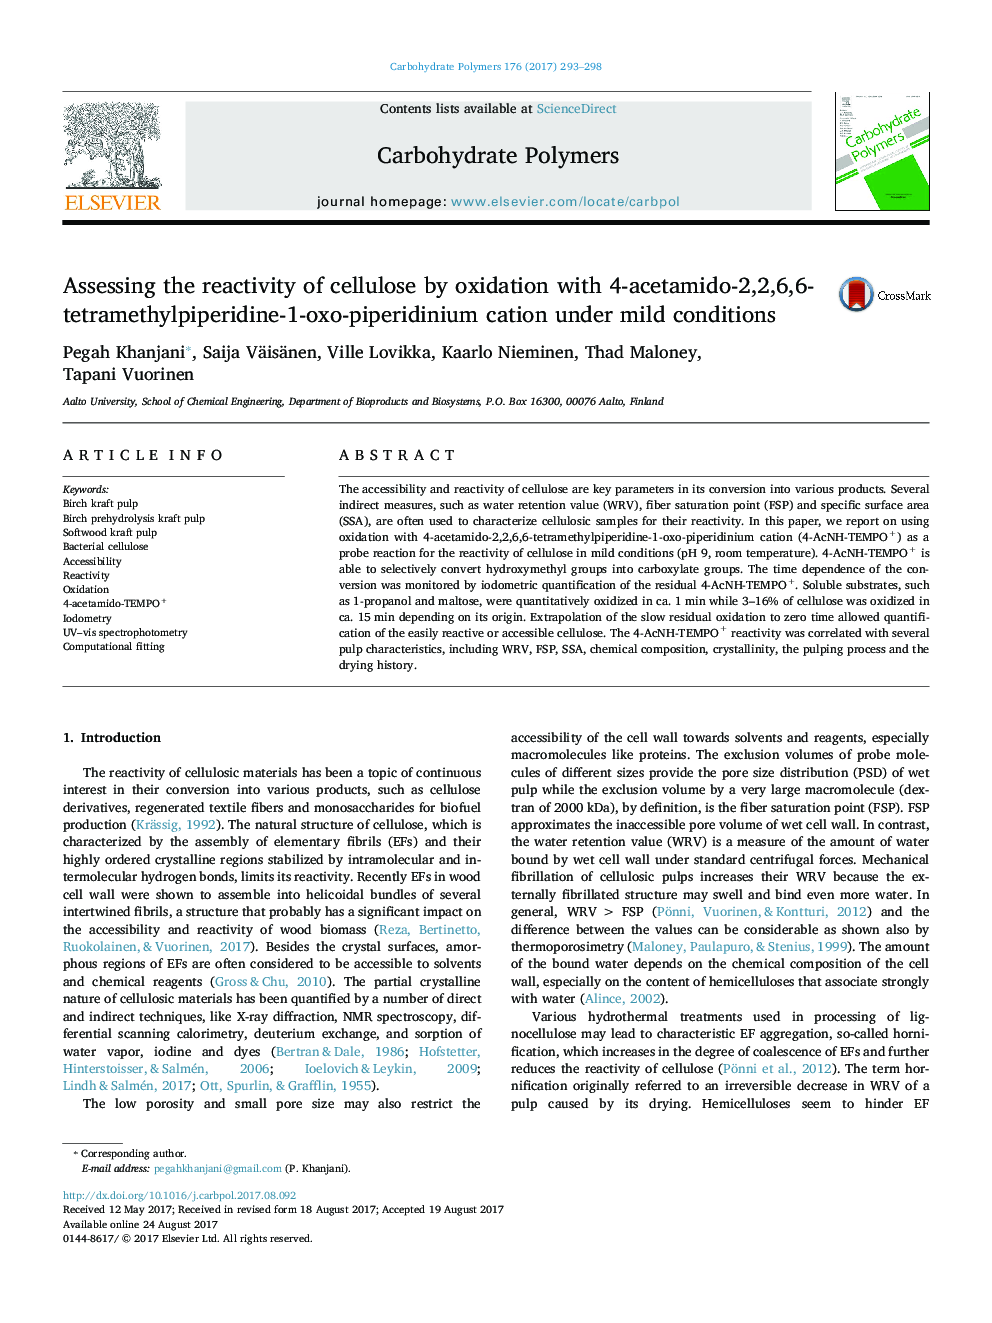 ارزیابی واکنش پذیری سلولز توسط اکسیداسیون با کاتیون 4-استامیدو-2،2،6،6-تترامتیلیکپیریدین-1-اکسپپپوردینیم تحت شرایط خفیف 